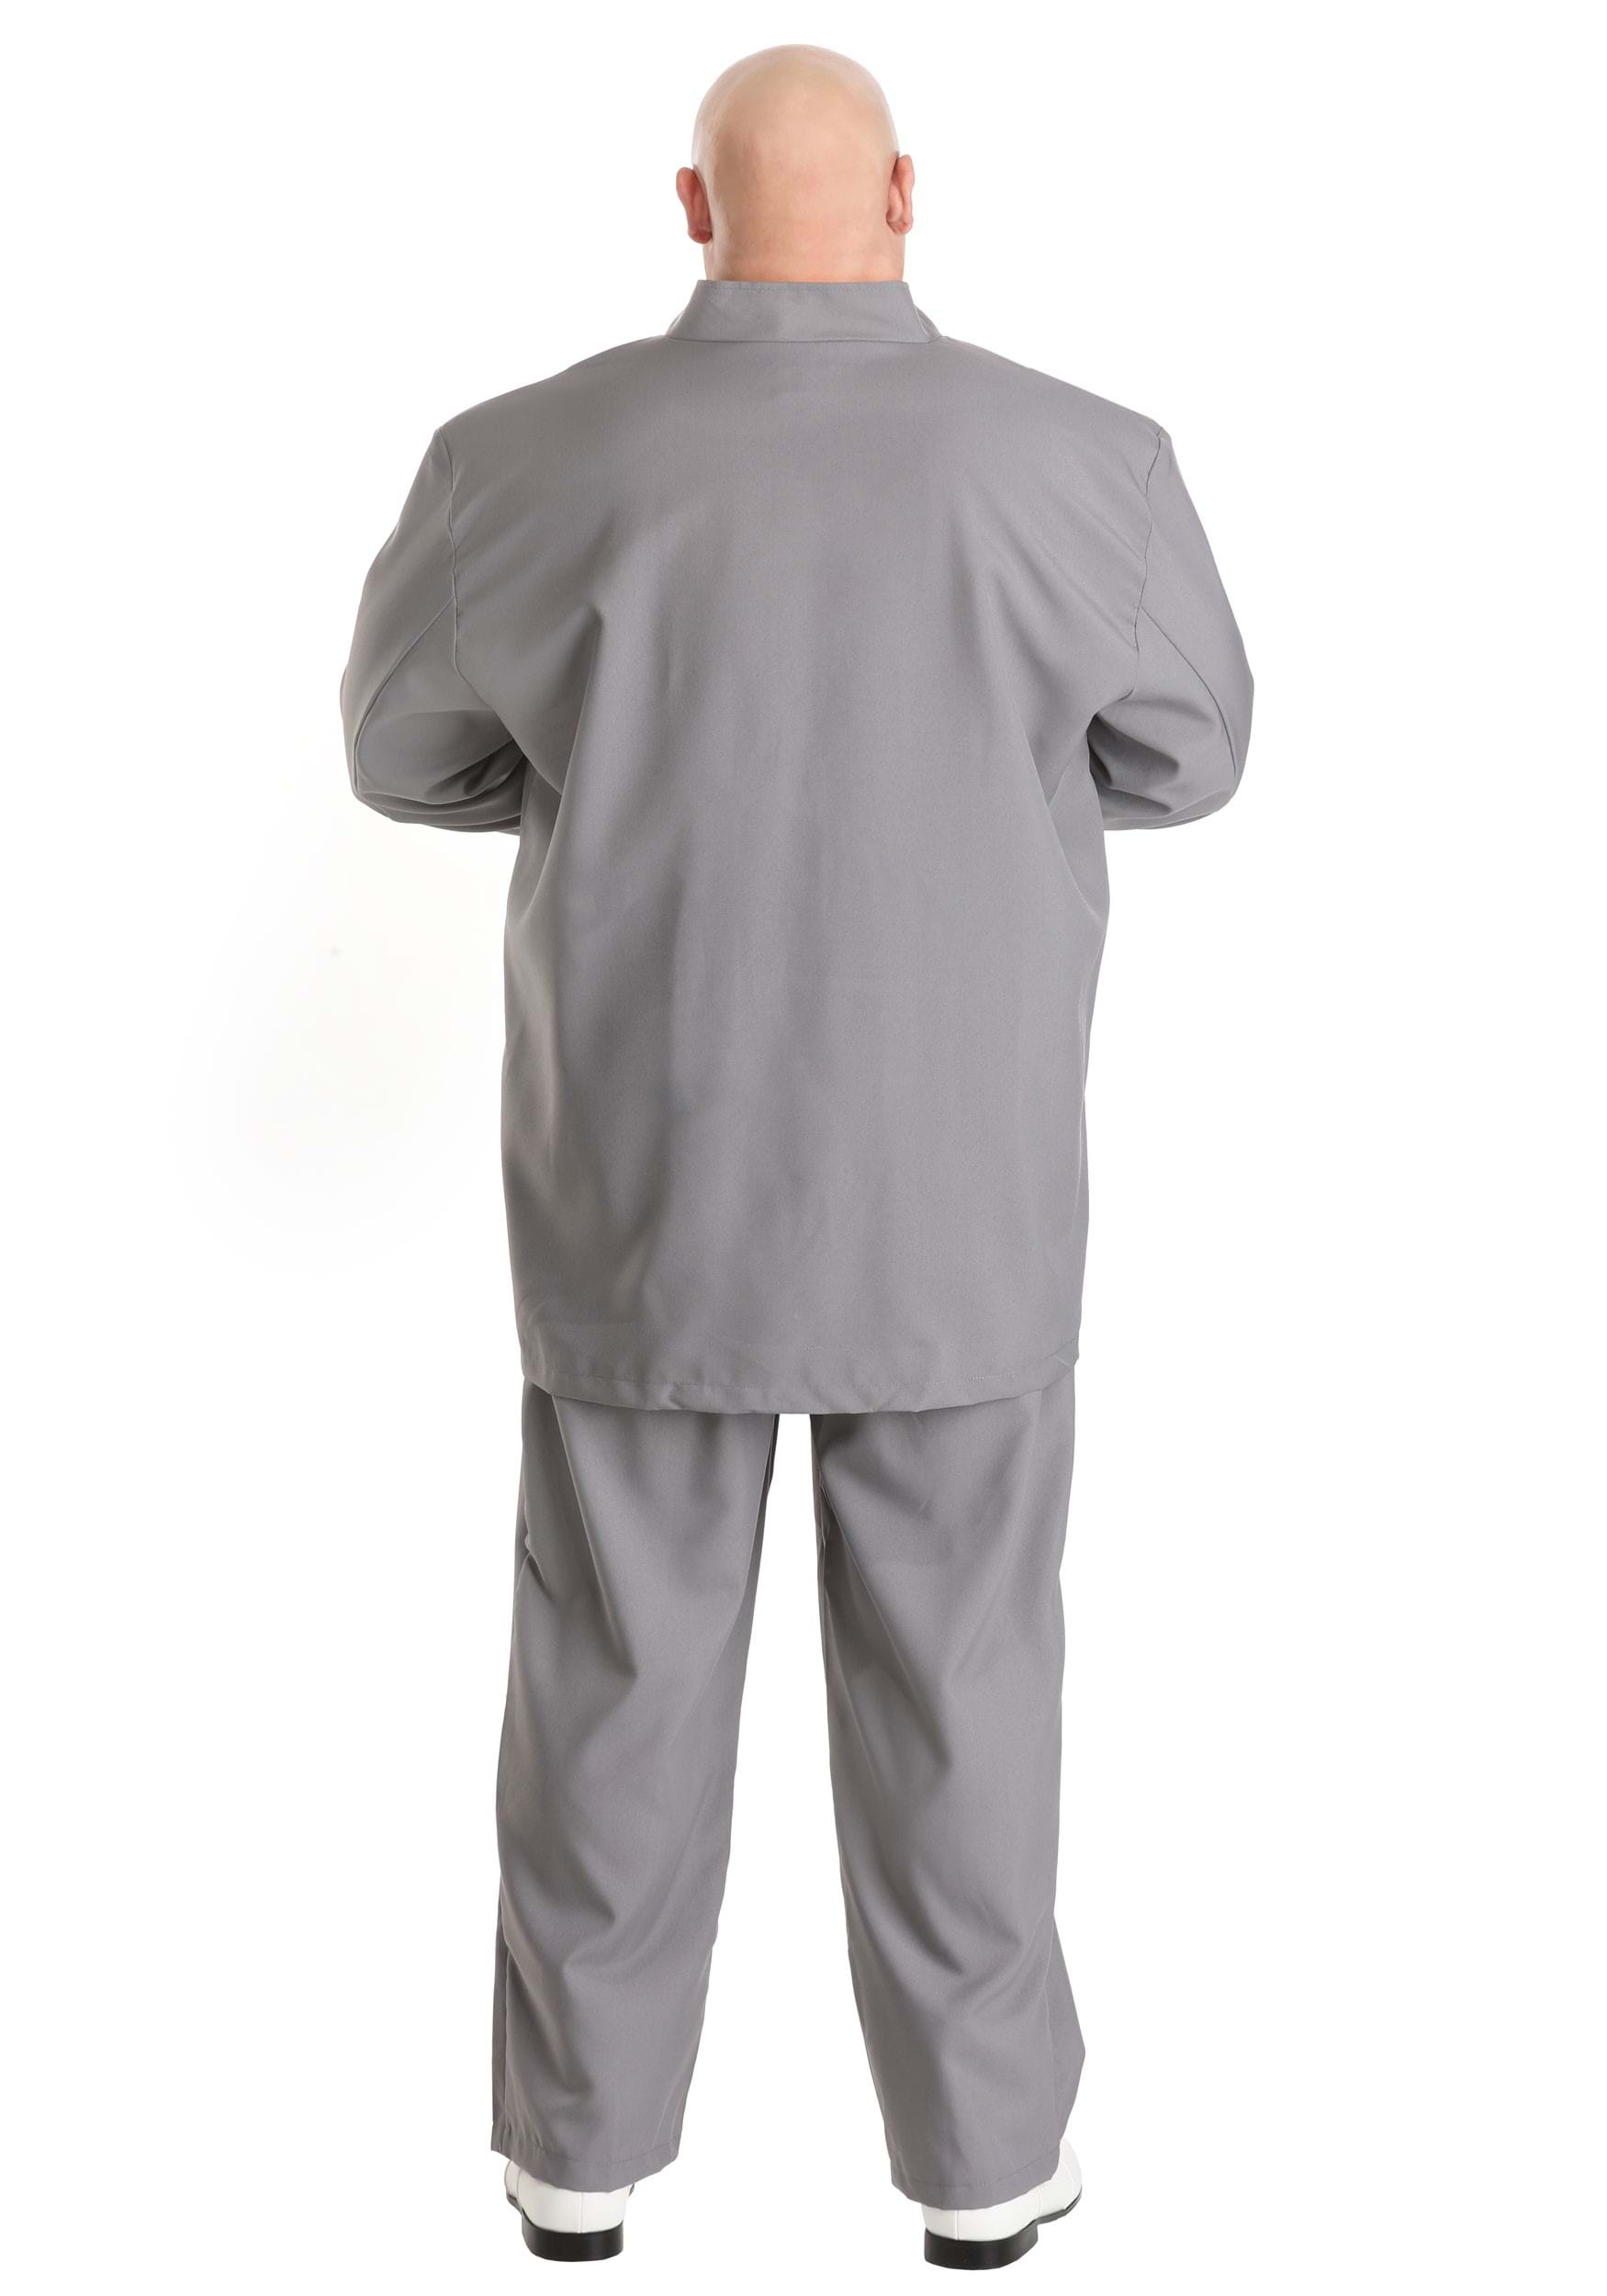 Evil Gray Plus Size Costume Suit For Men